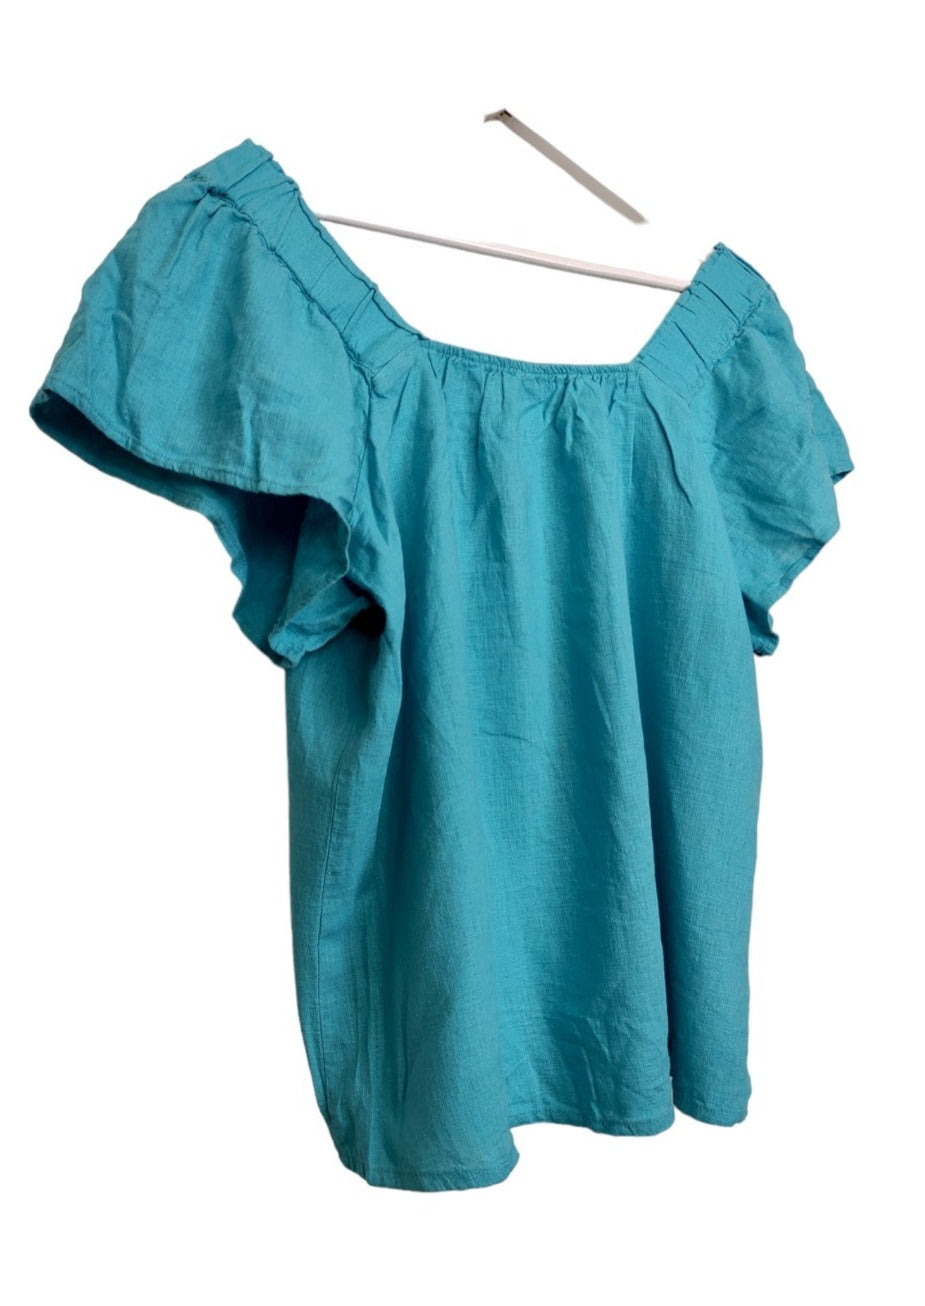 Γυναικεία Μπλούζα NEXT σε Γαλάζιο Χρώμα (Medium)